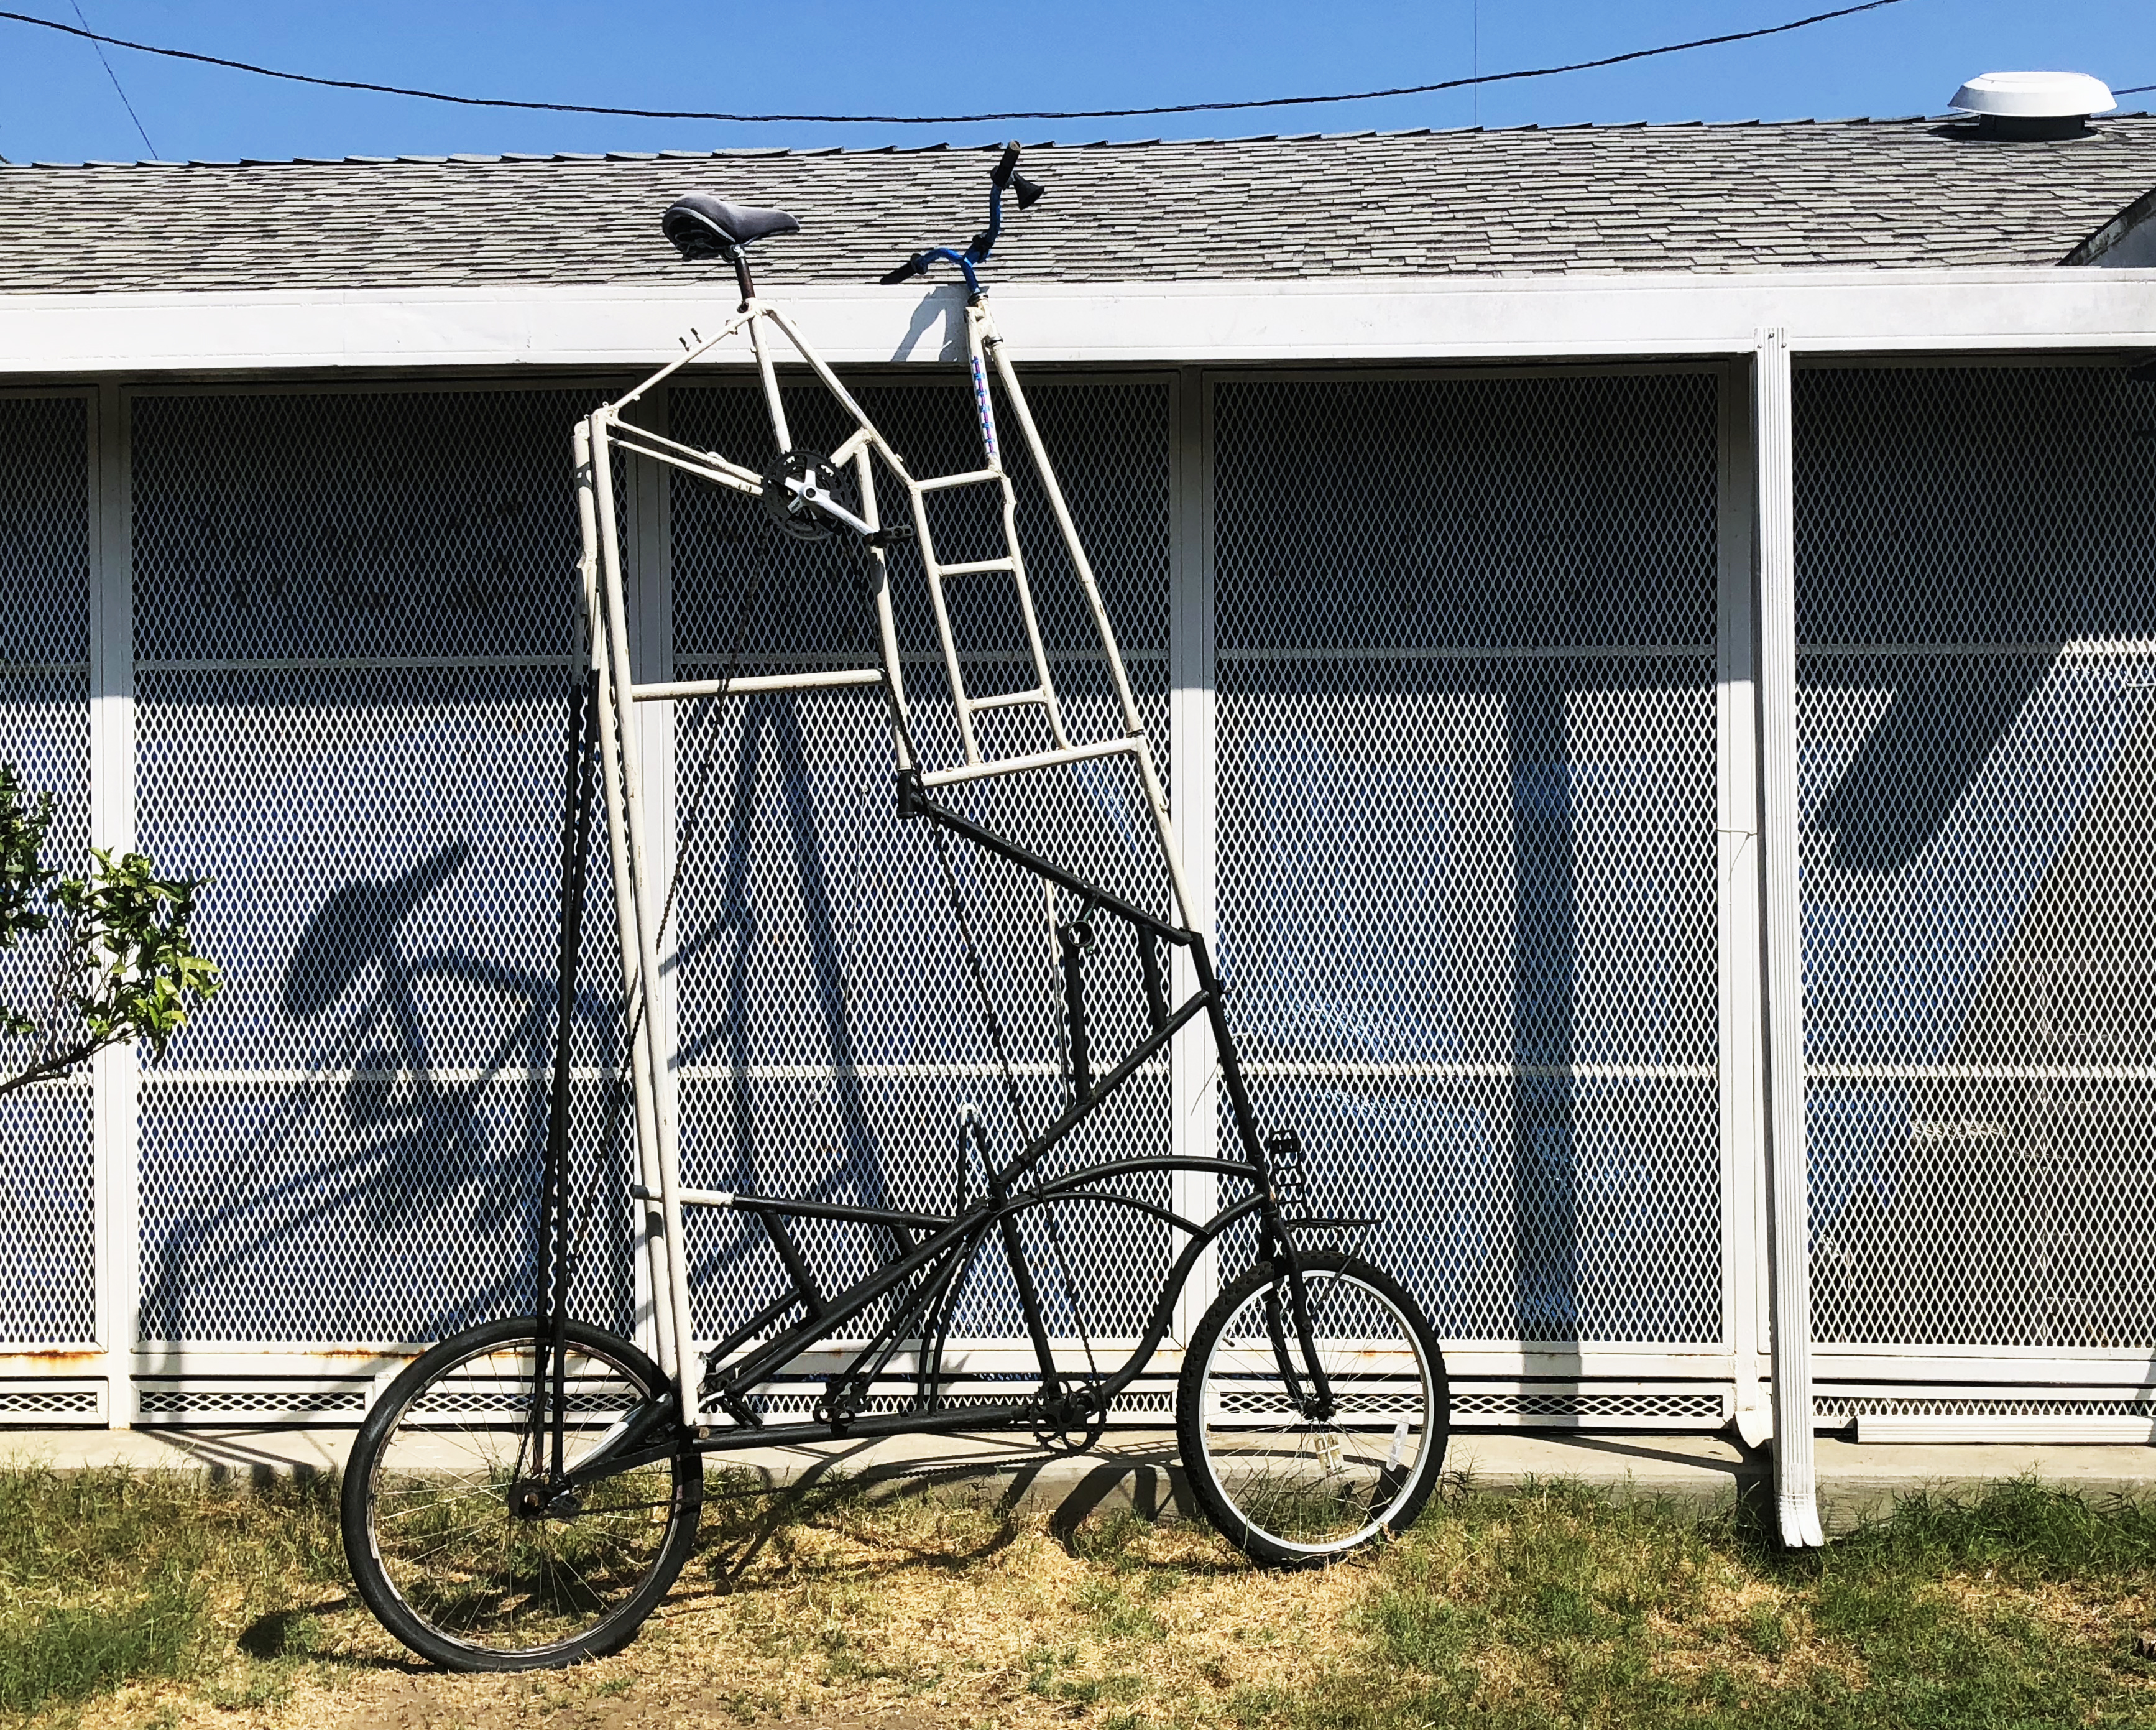 Unusually tall Bike